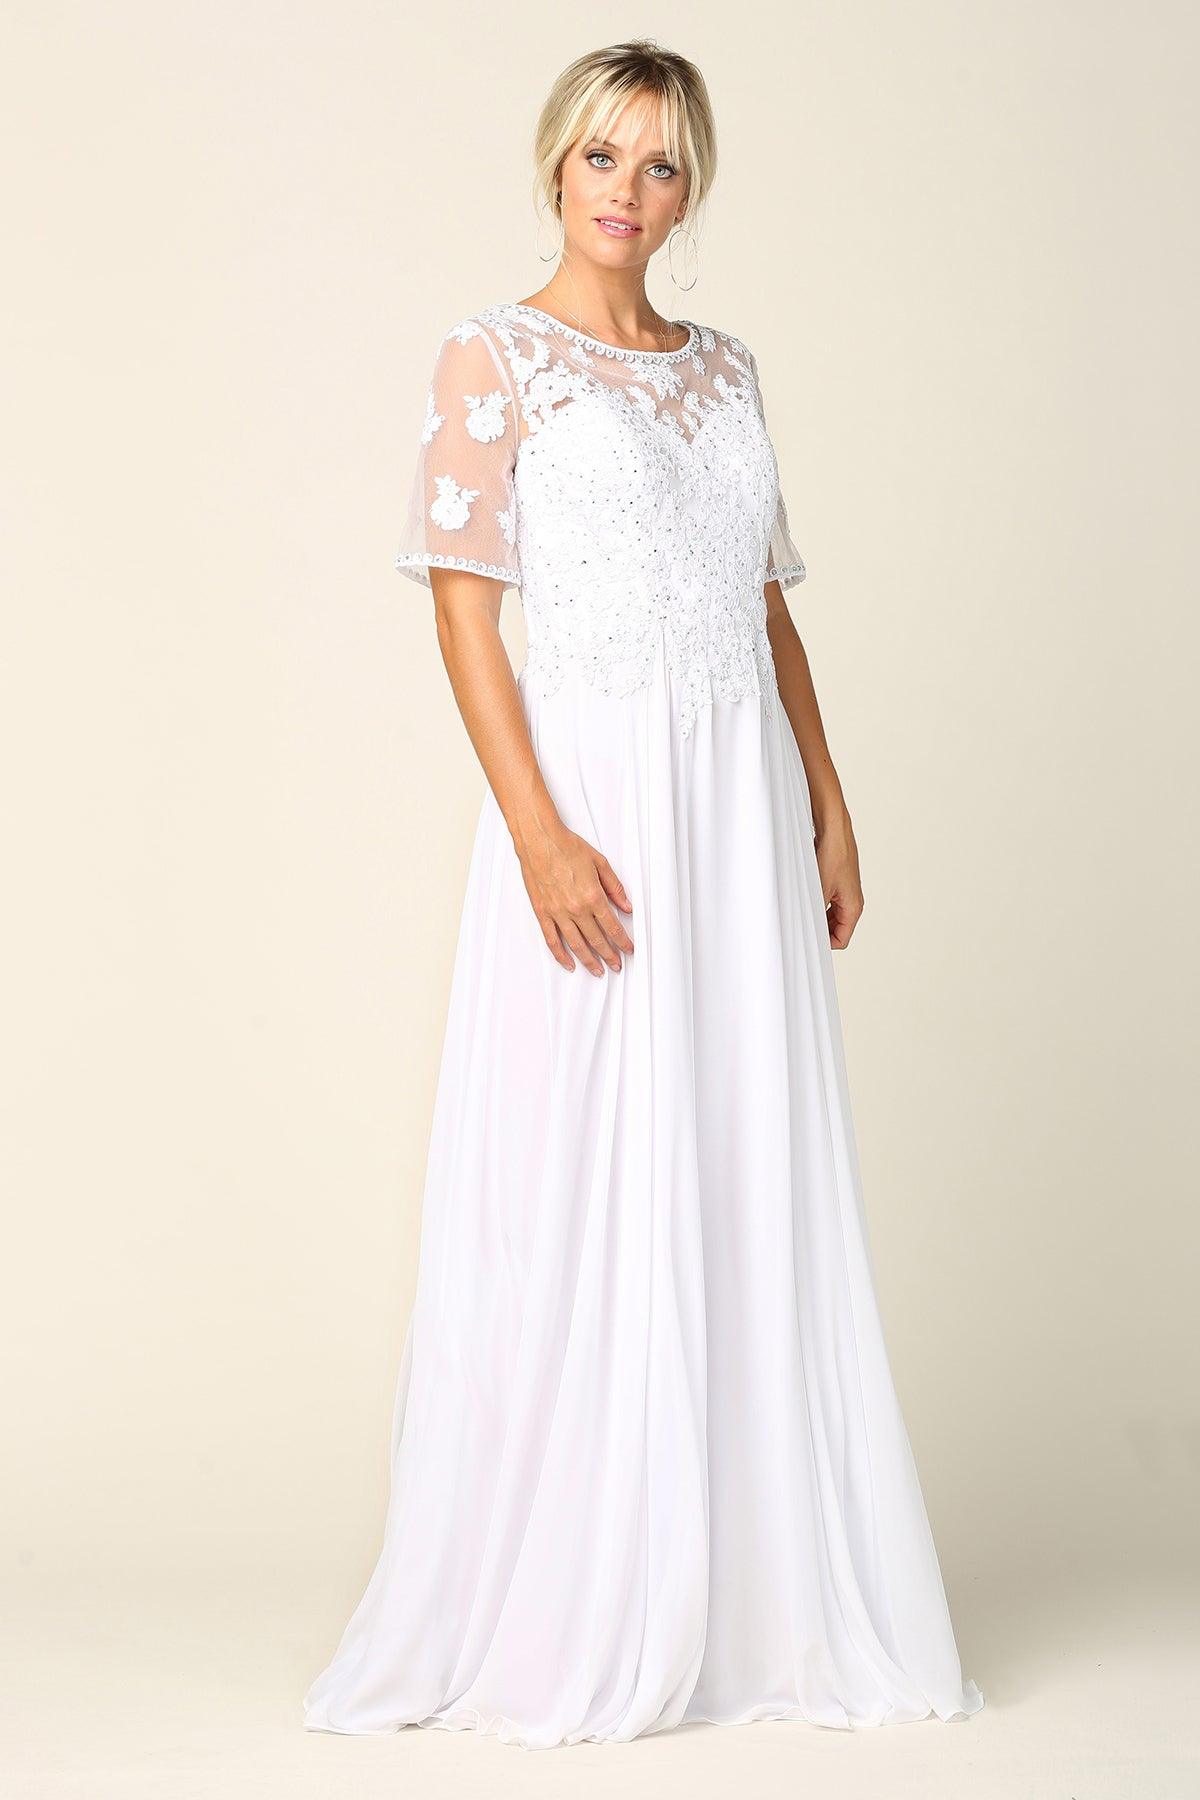 Bridal Long Gown Lace Applique Wedding Dress - The Dress Outlet